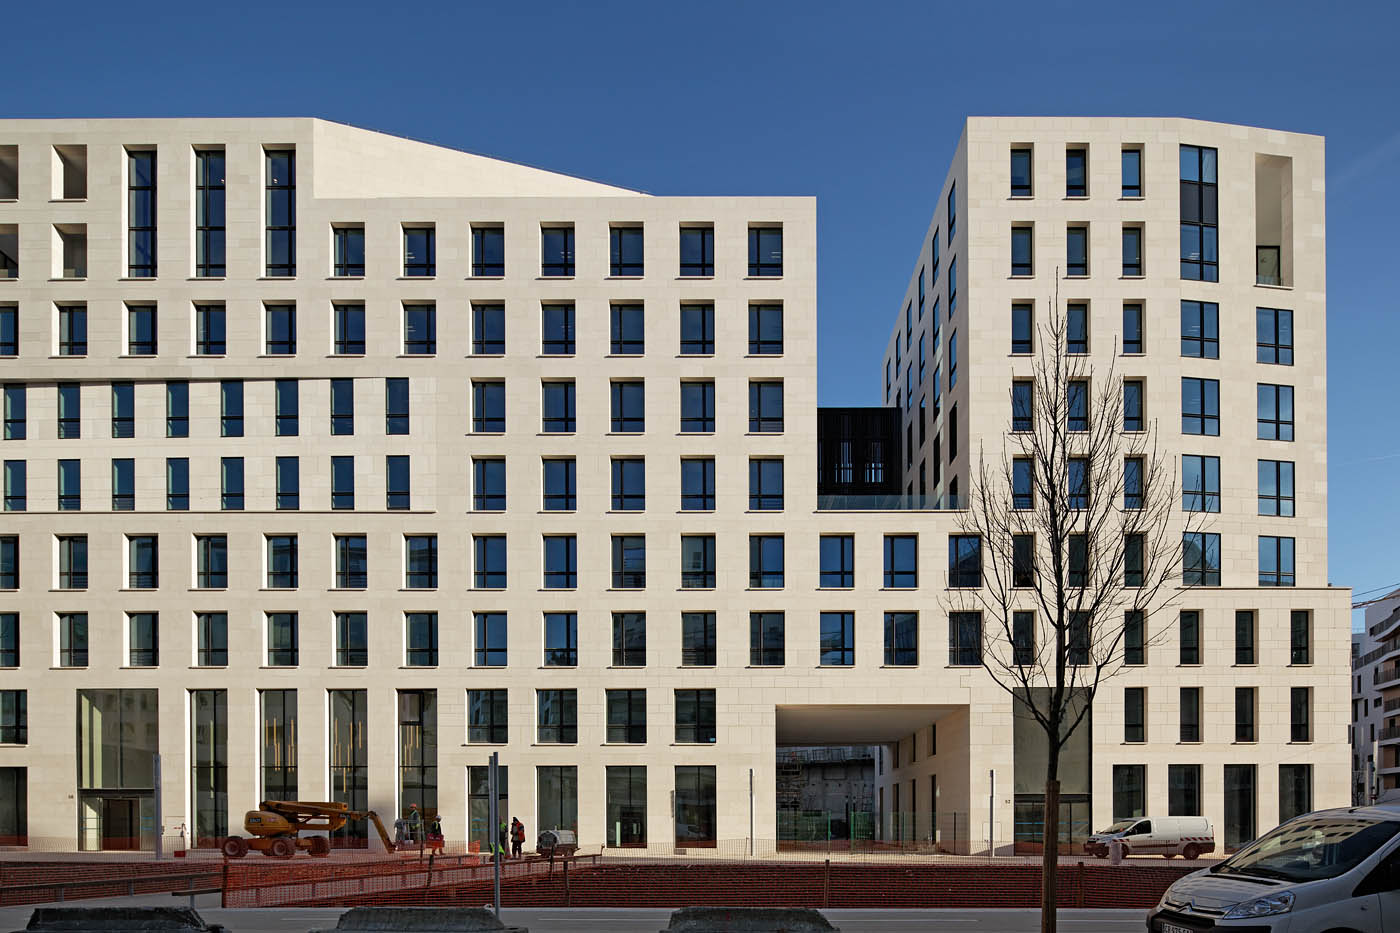 Ardeko, Baumschlager Eberle architects, Bernhardt Curk Architectes, Boulogne, 2013